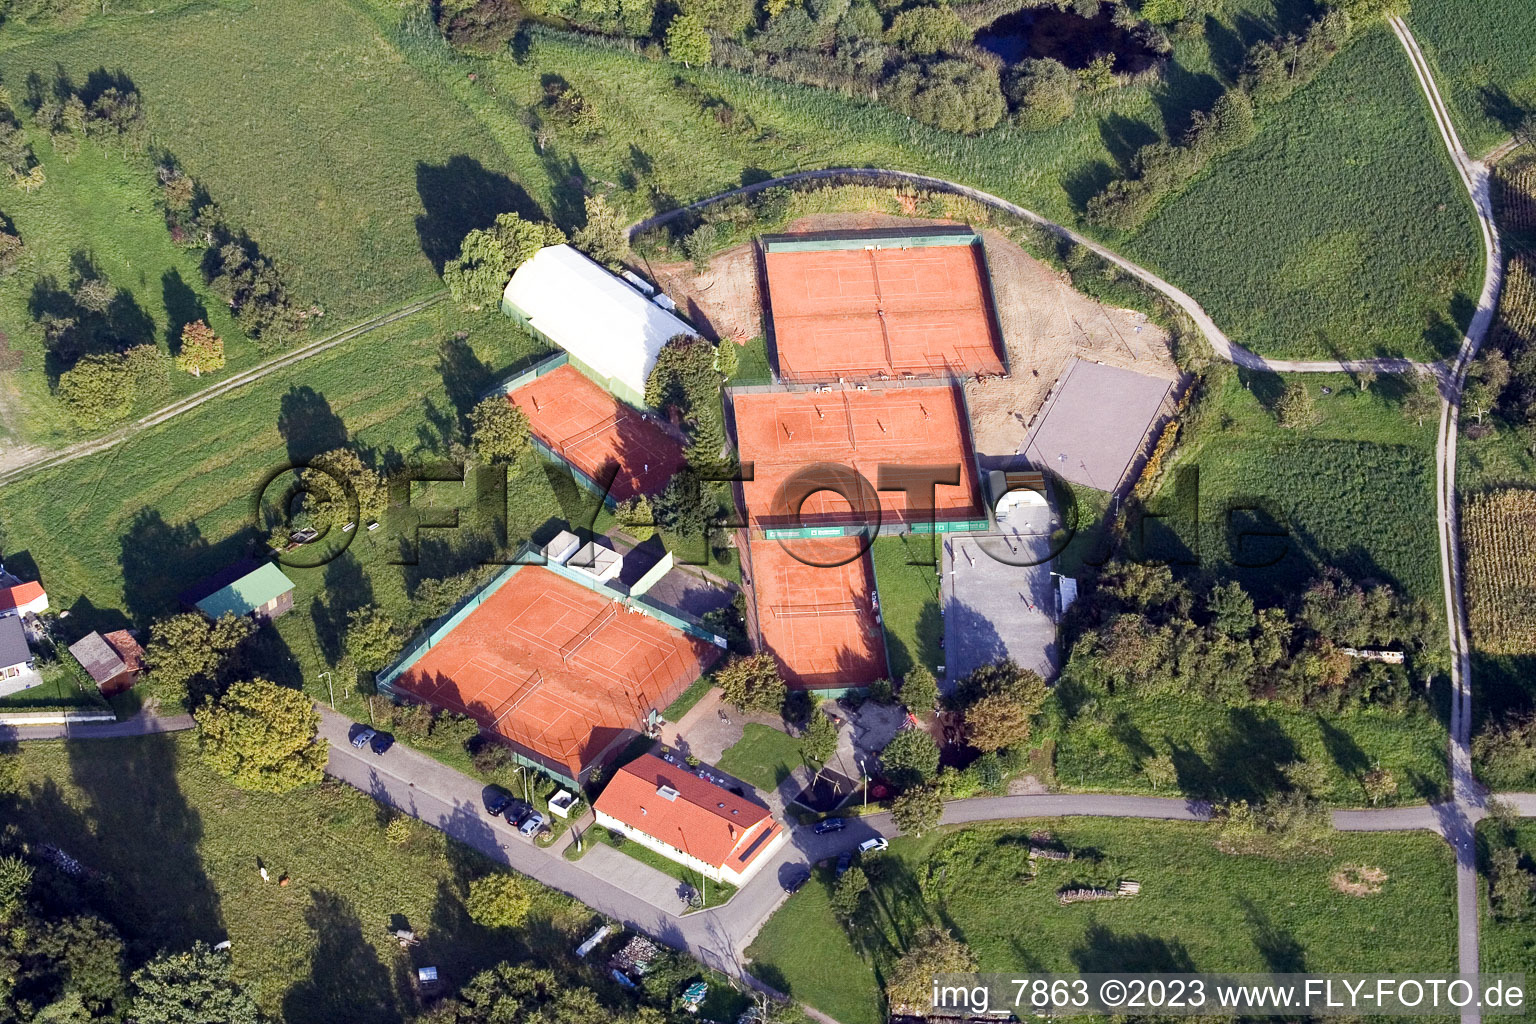 Luftbild von Maximiliansau, Tennisclub in Wörth am Rhein im Bundesland Rheinland-Pfalz, Deutschland